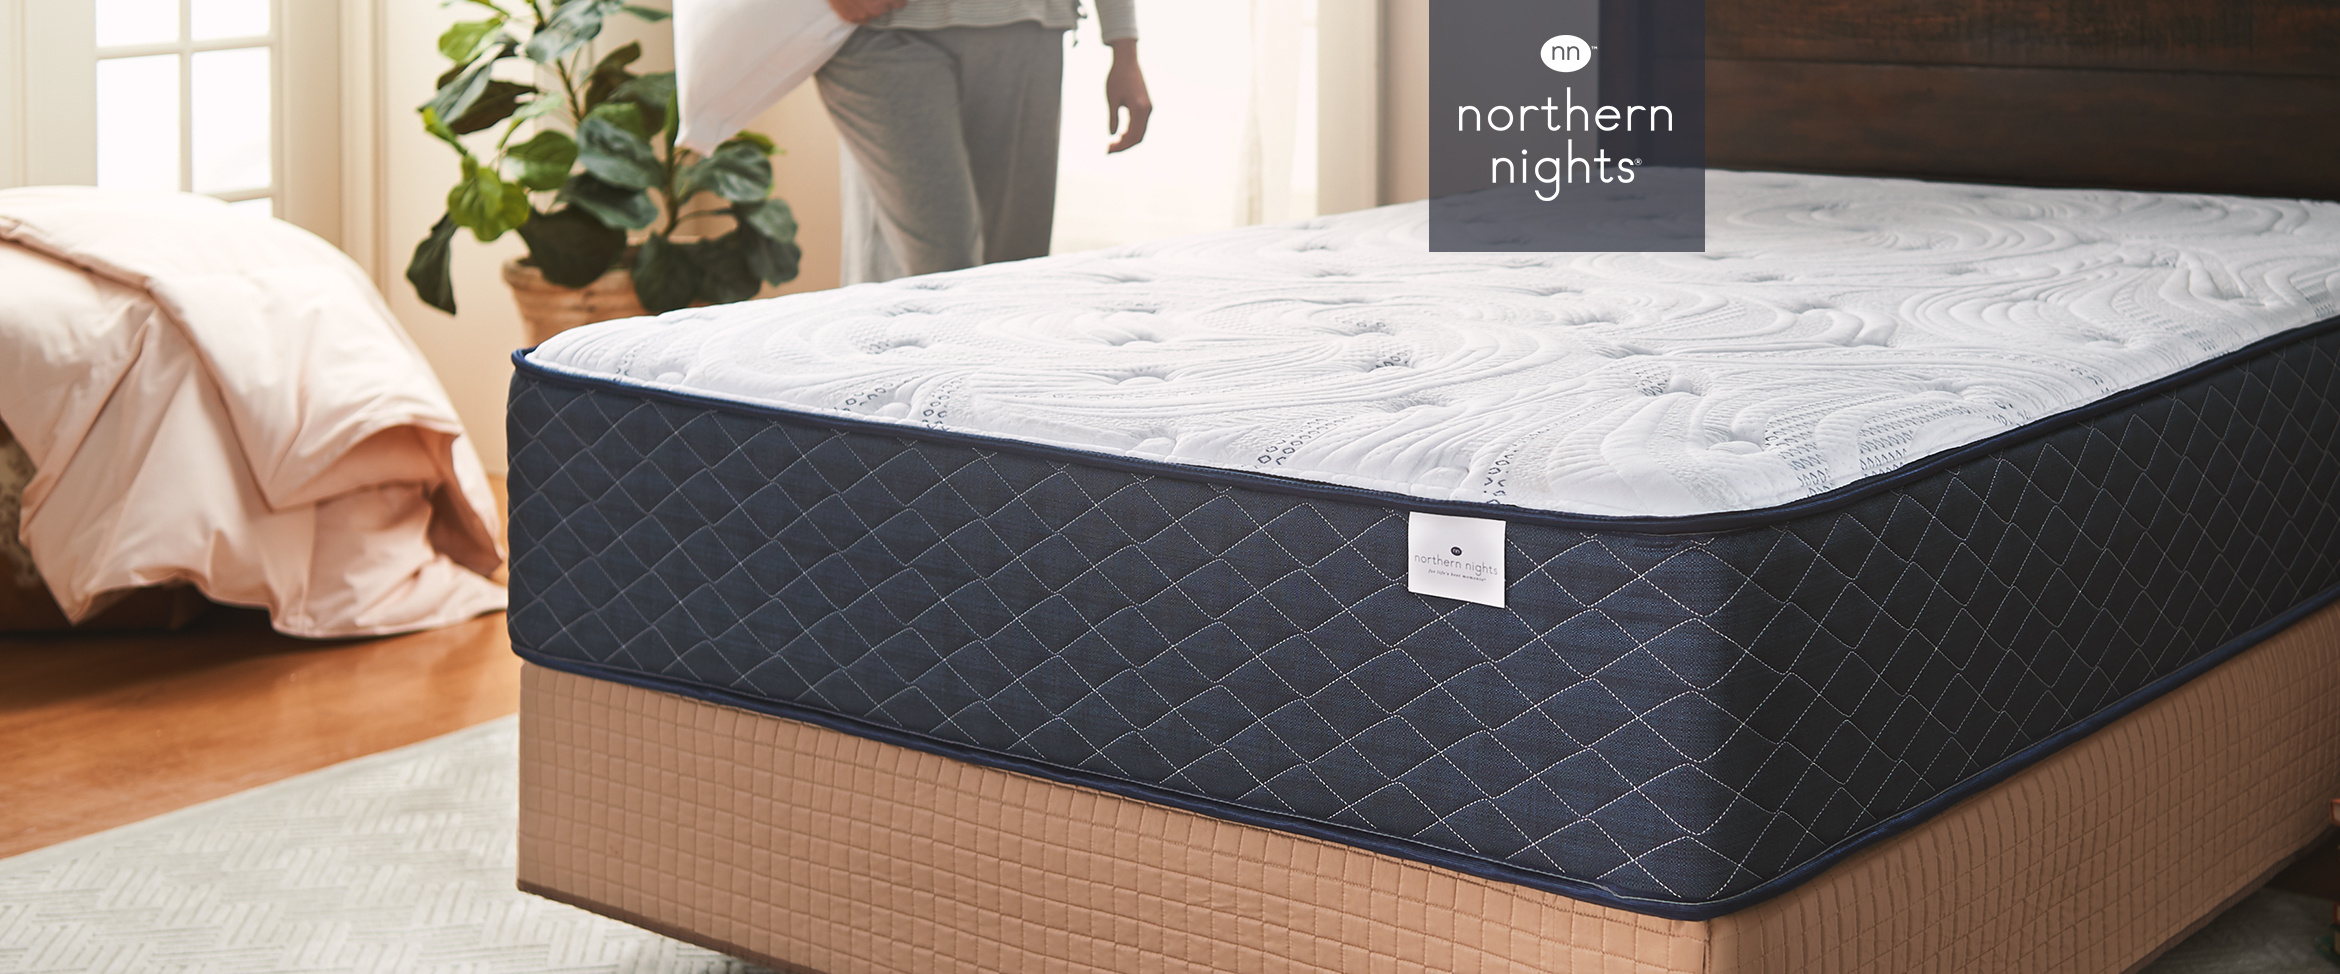 northern nights serene dream hybrid mattress